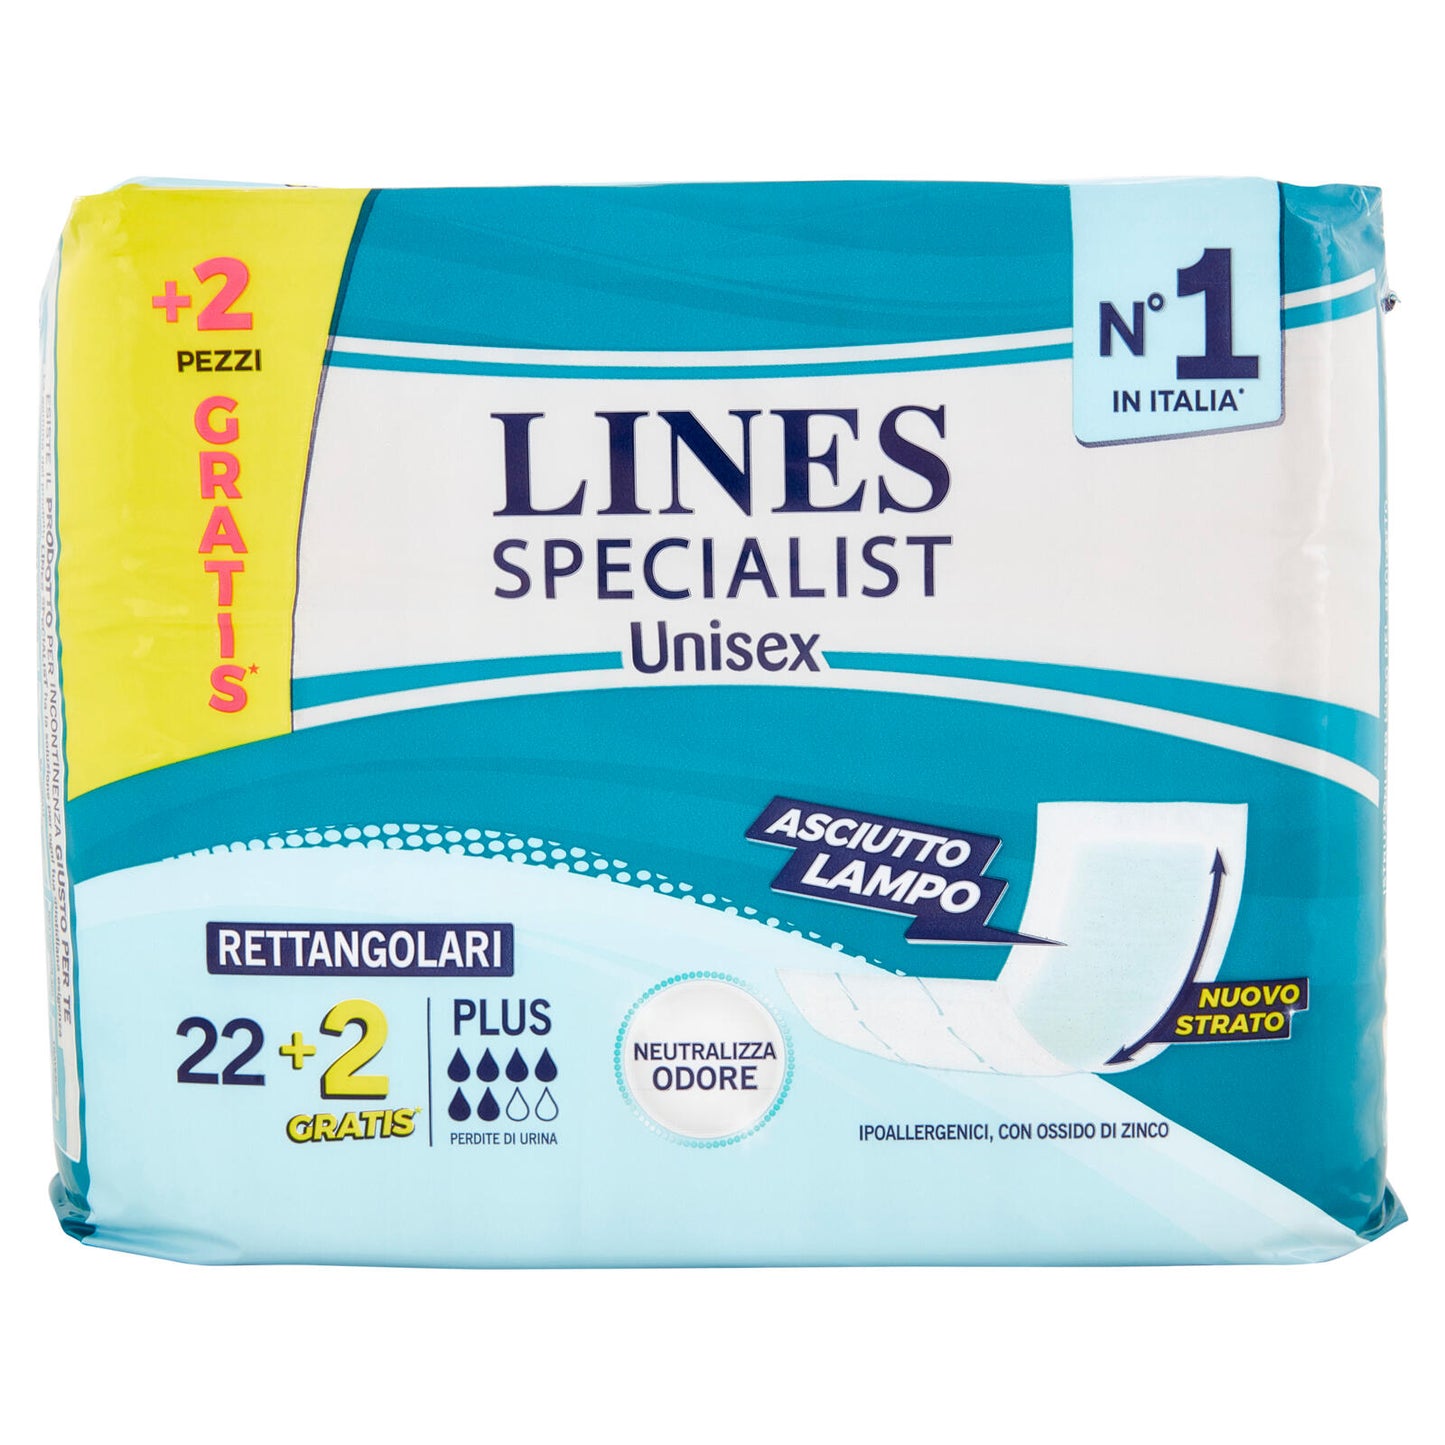 Lines Specialist Unisex Rettangolari Plus 22+2 pz